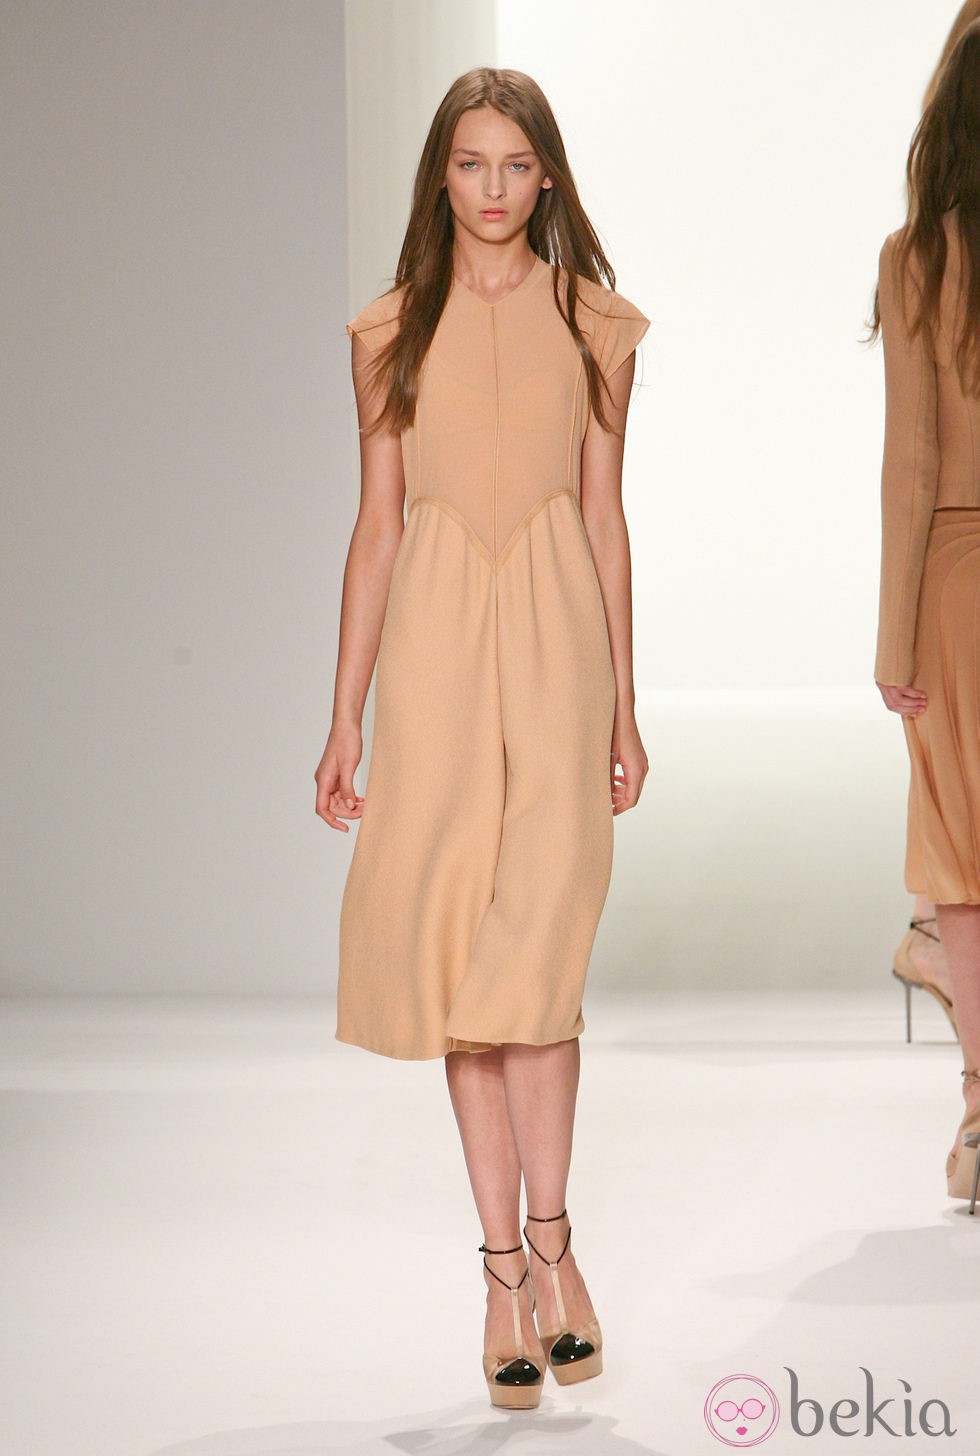 Vestido en tono nude de Calvin Klein, colección primavera de 2012